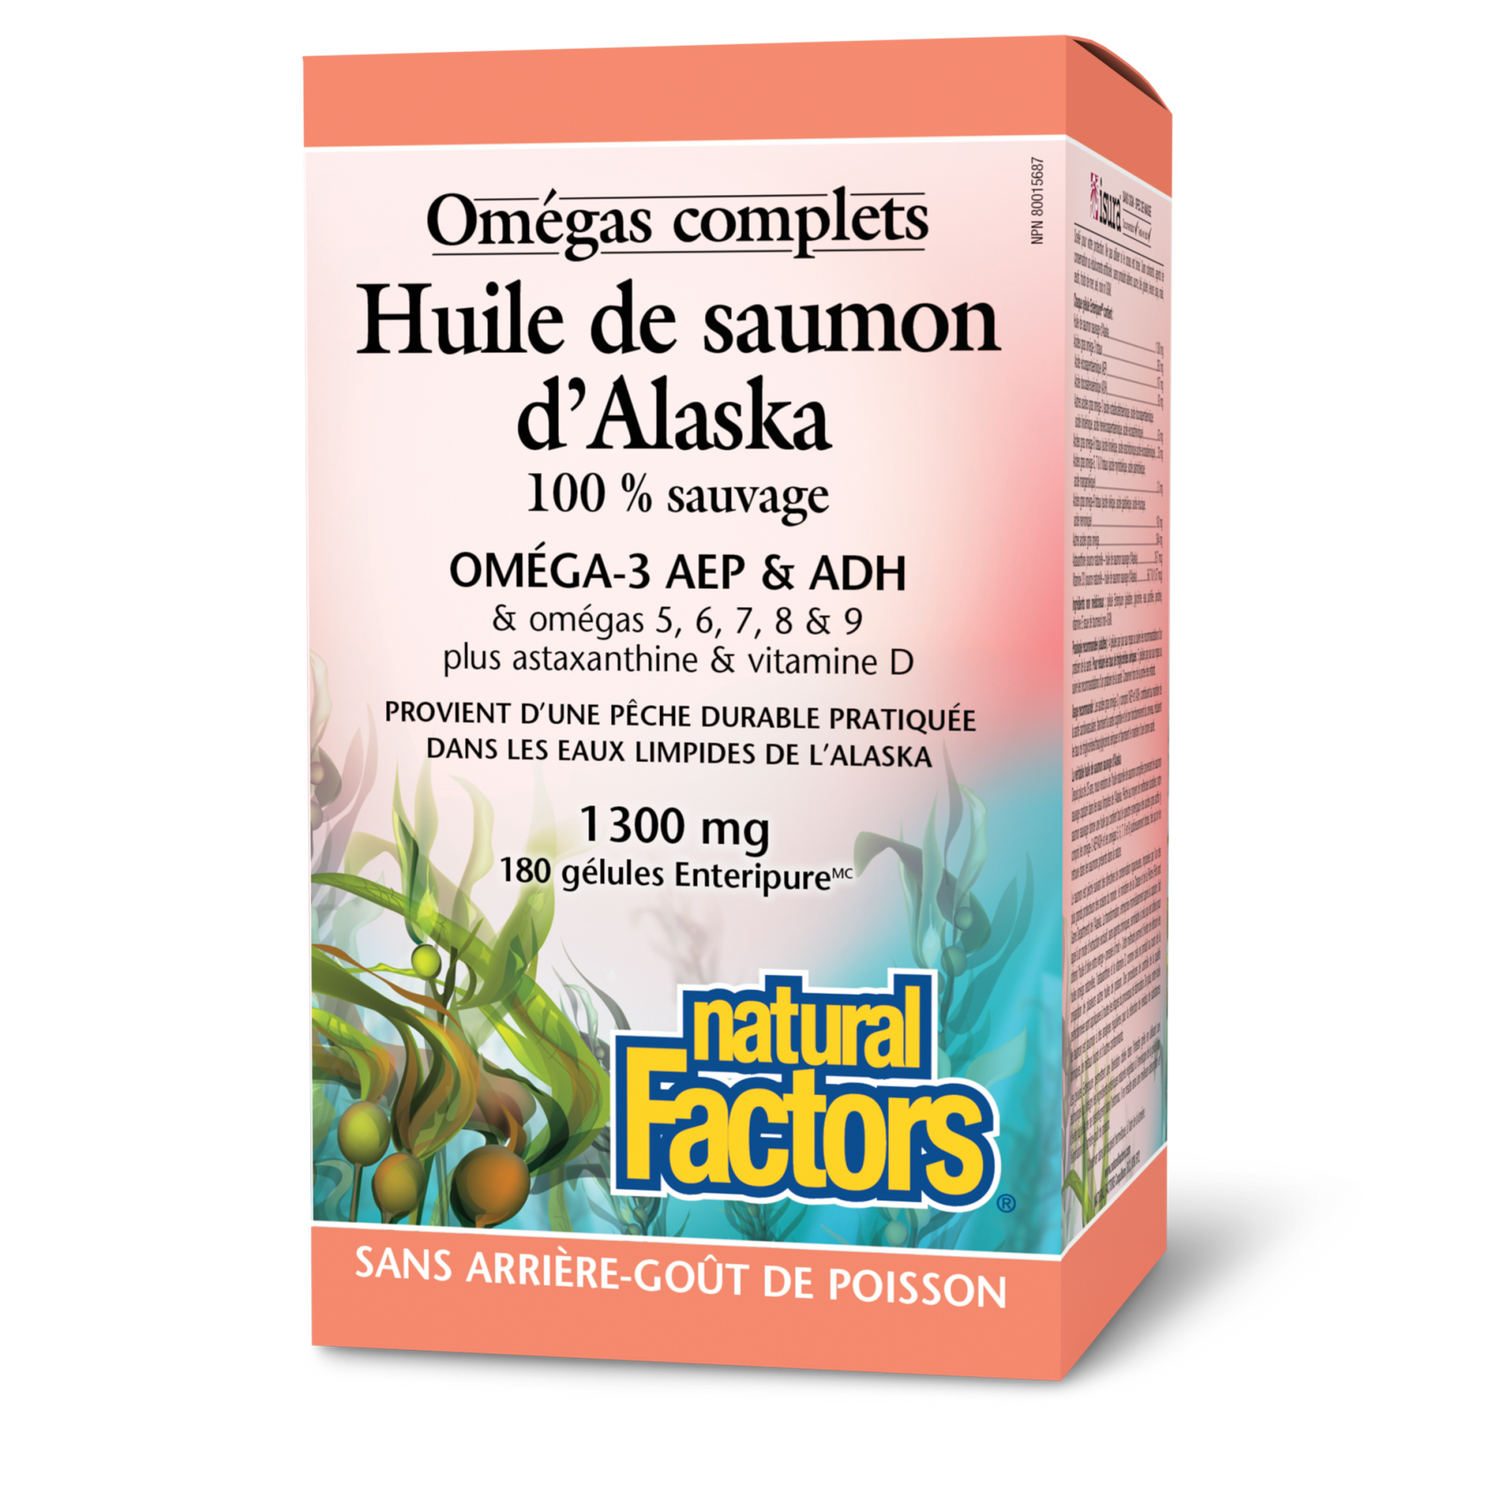 Huile de saumon d’Alaska 100 % sauvage 1 300 mg, Omégas complets, Natural Factors|v|image|2266